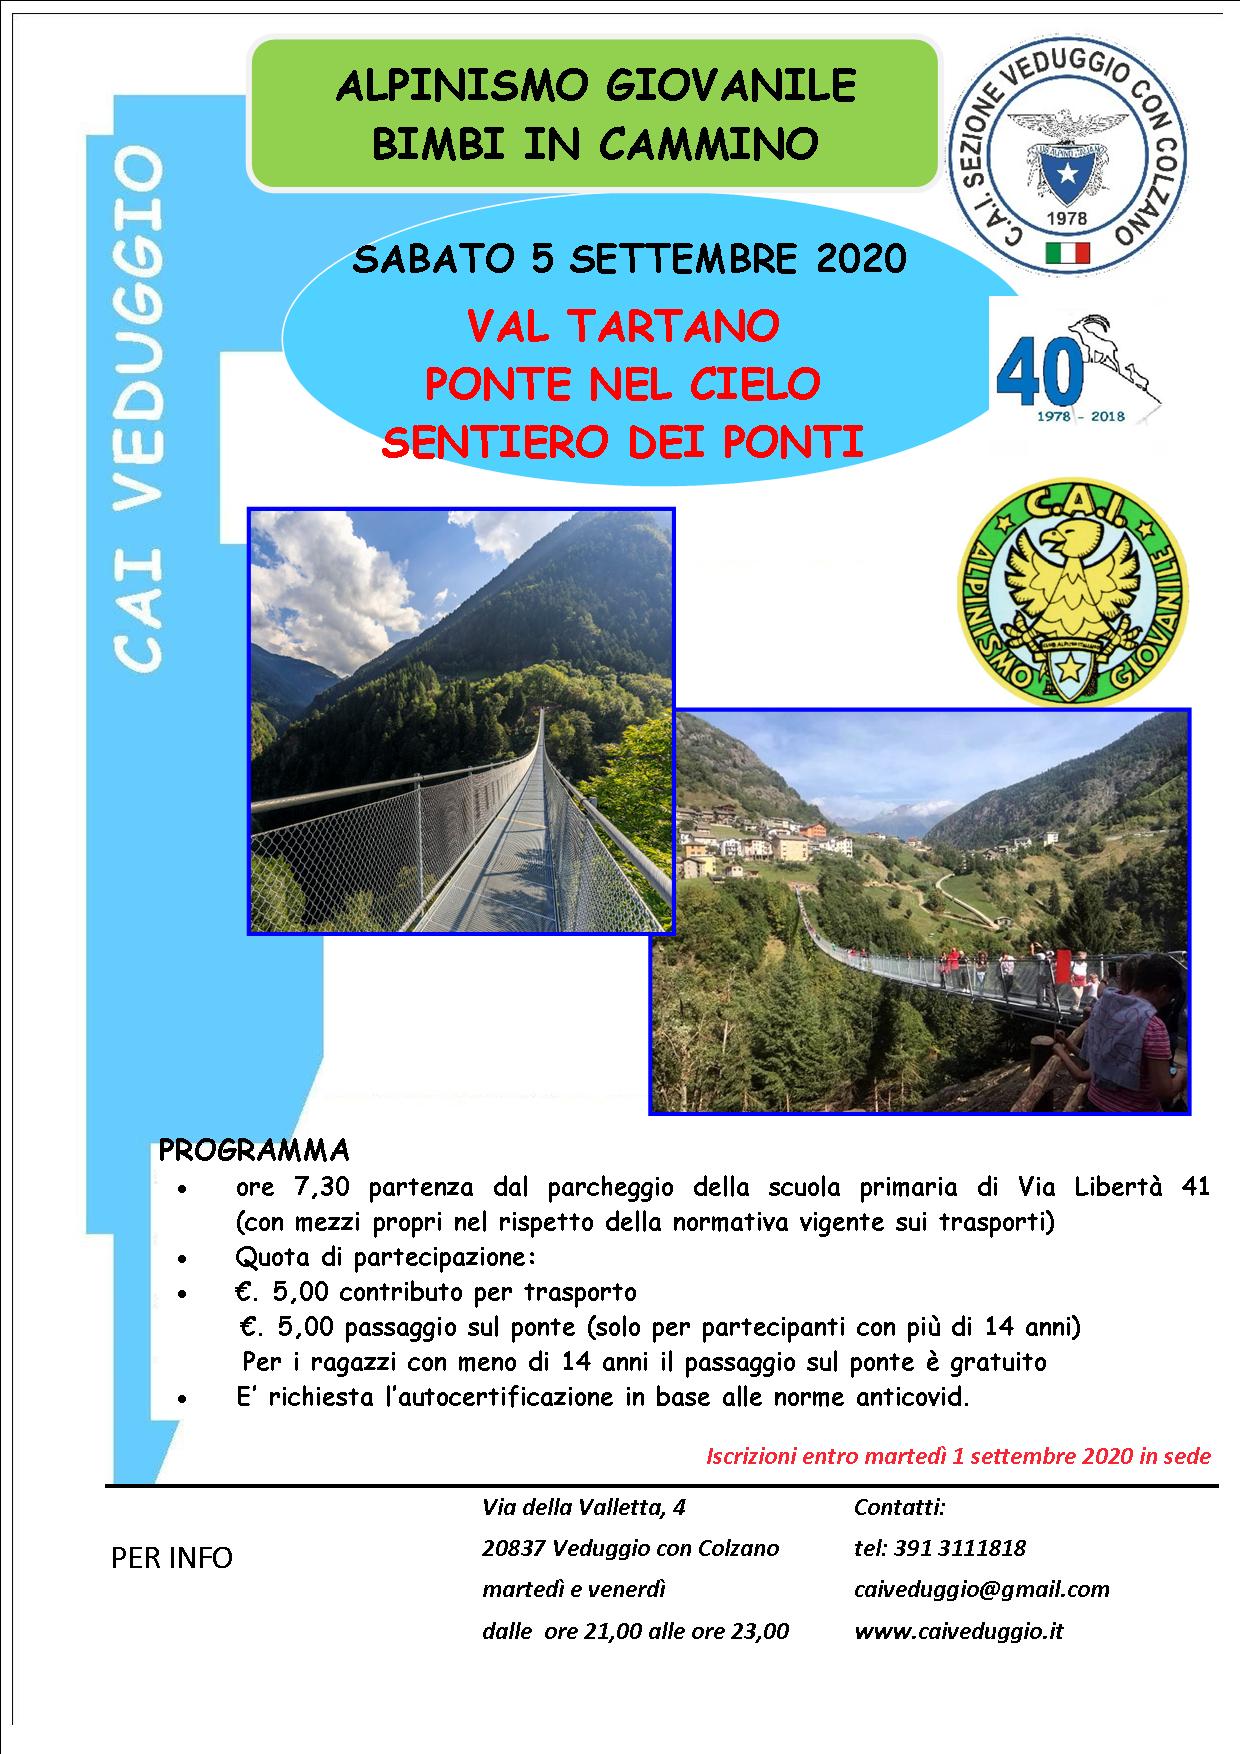 Sabato 5 settembre 2020 – Alpinismo Giovanile – Val Tartano-Ponte nel cielo – Sentiero dei ponti